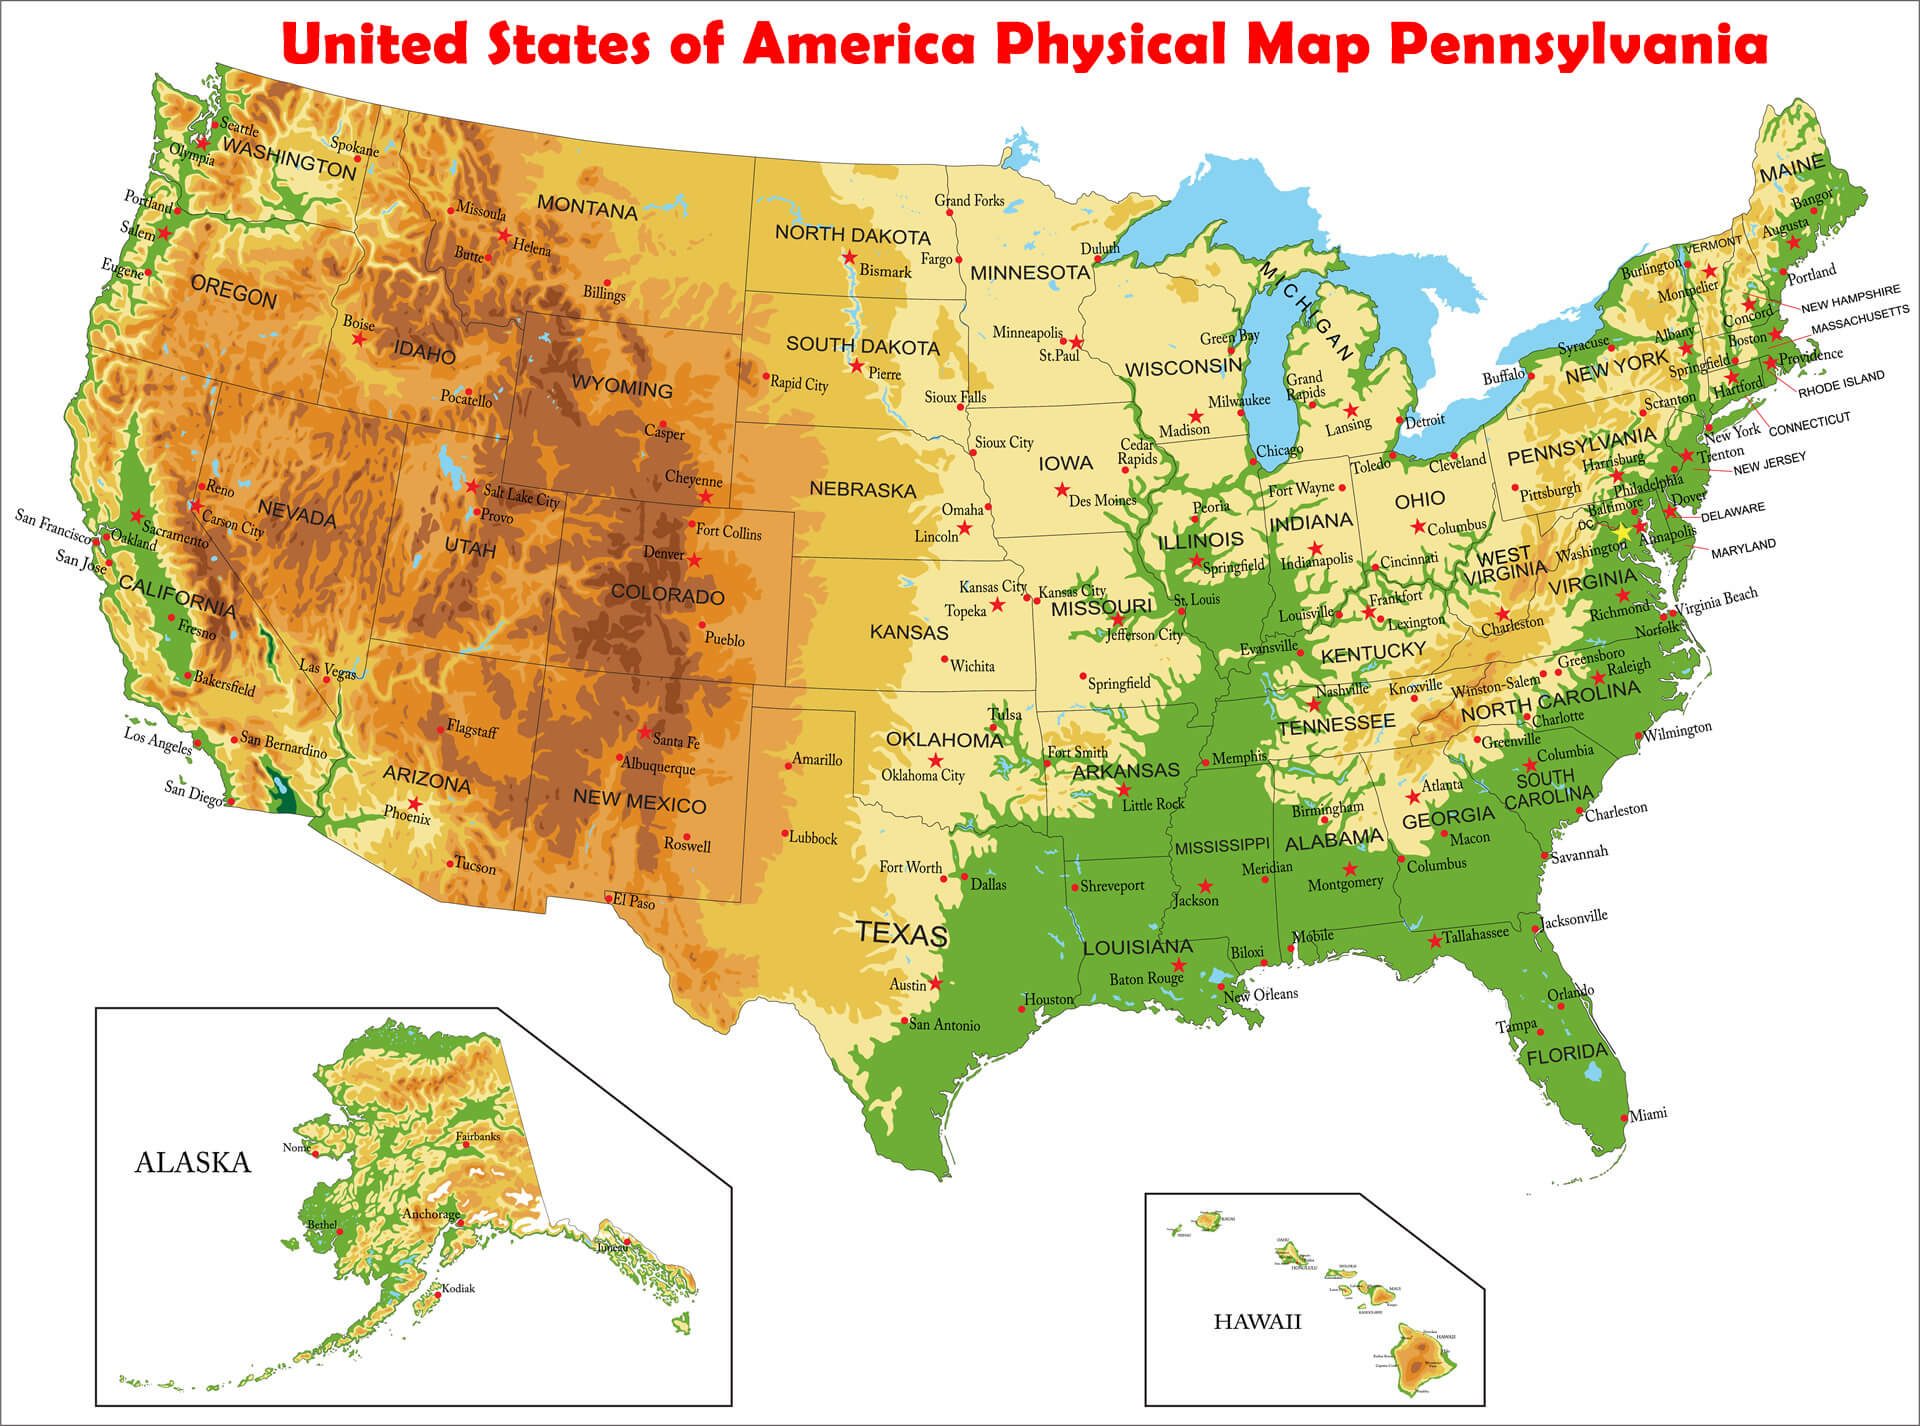 les etats unis d'amerique physique carte pennsylvania